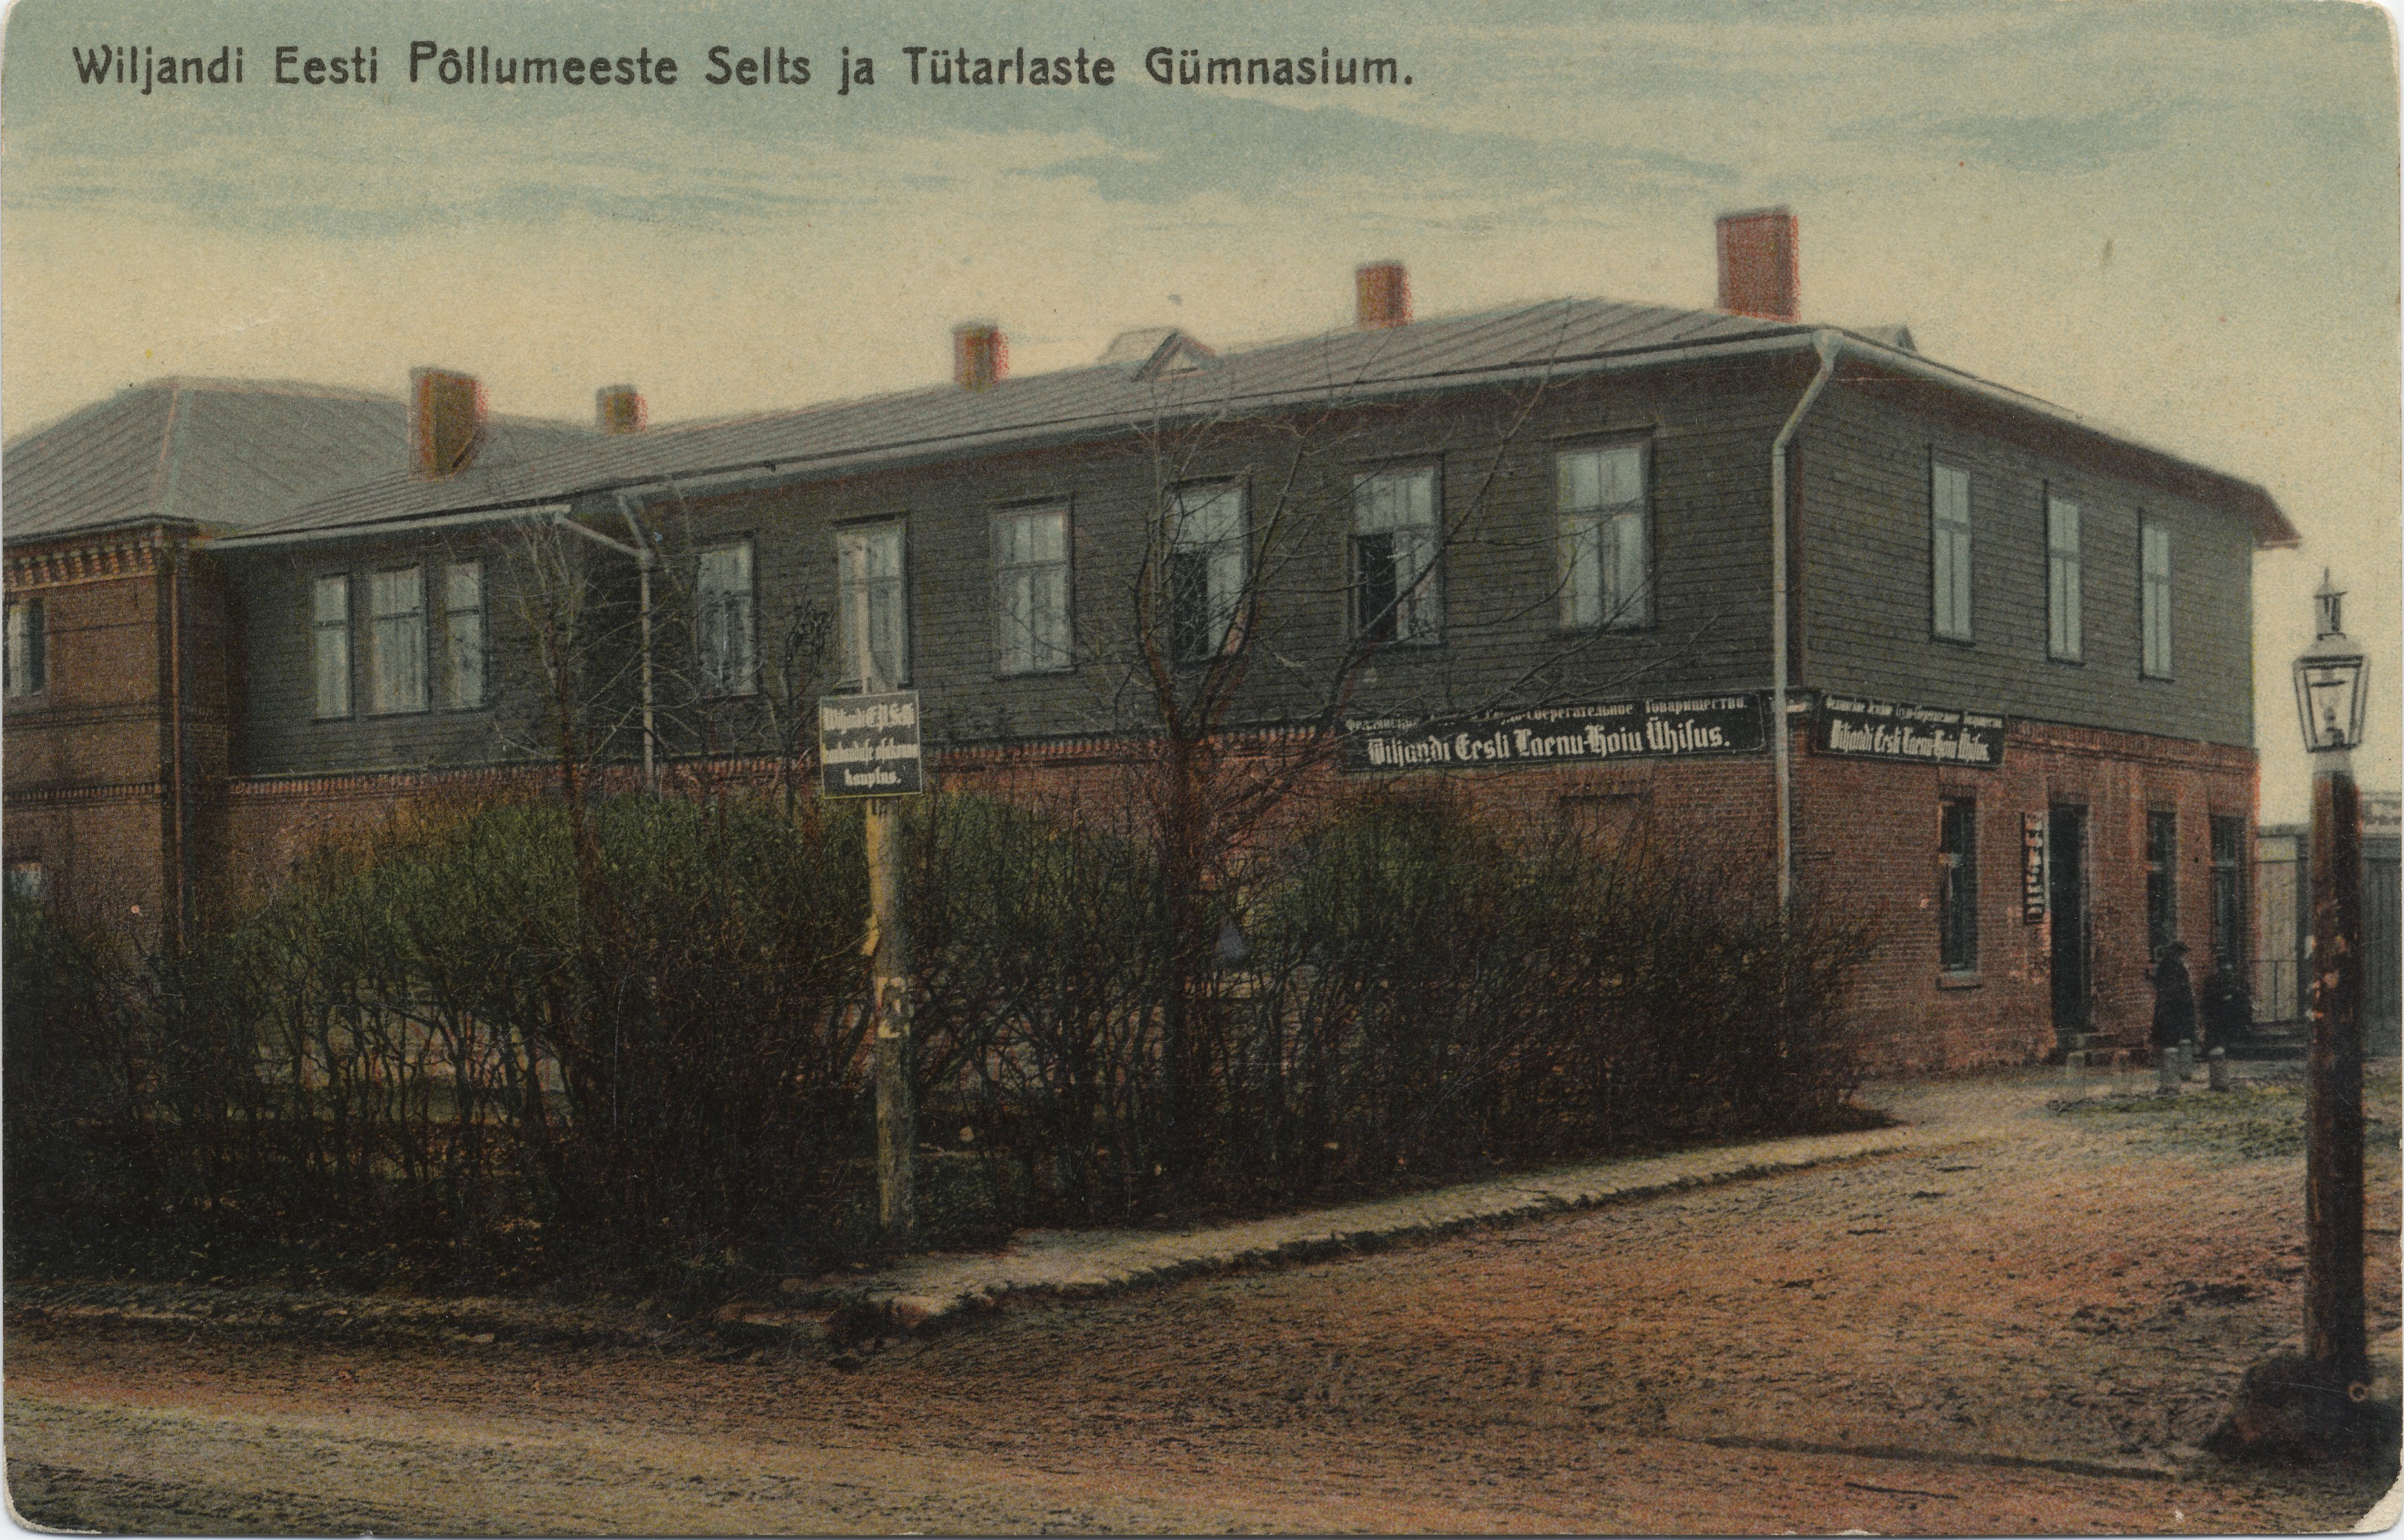 Wiljandi Estonian Society of Farmers and Gymnasium of Titus